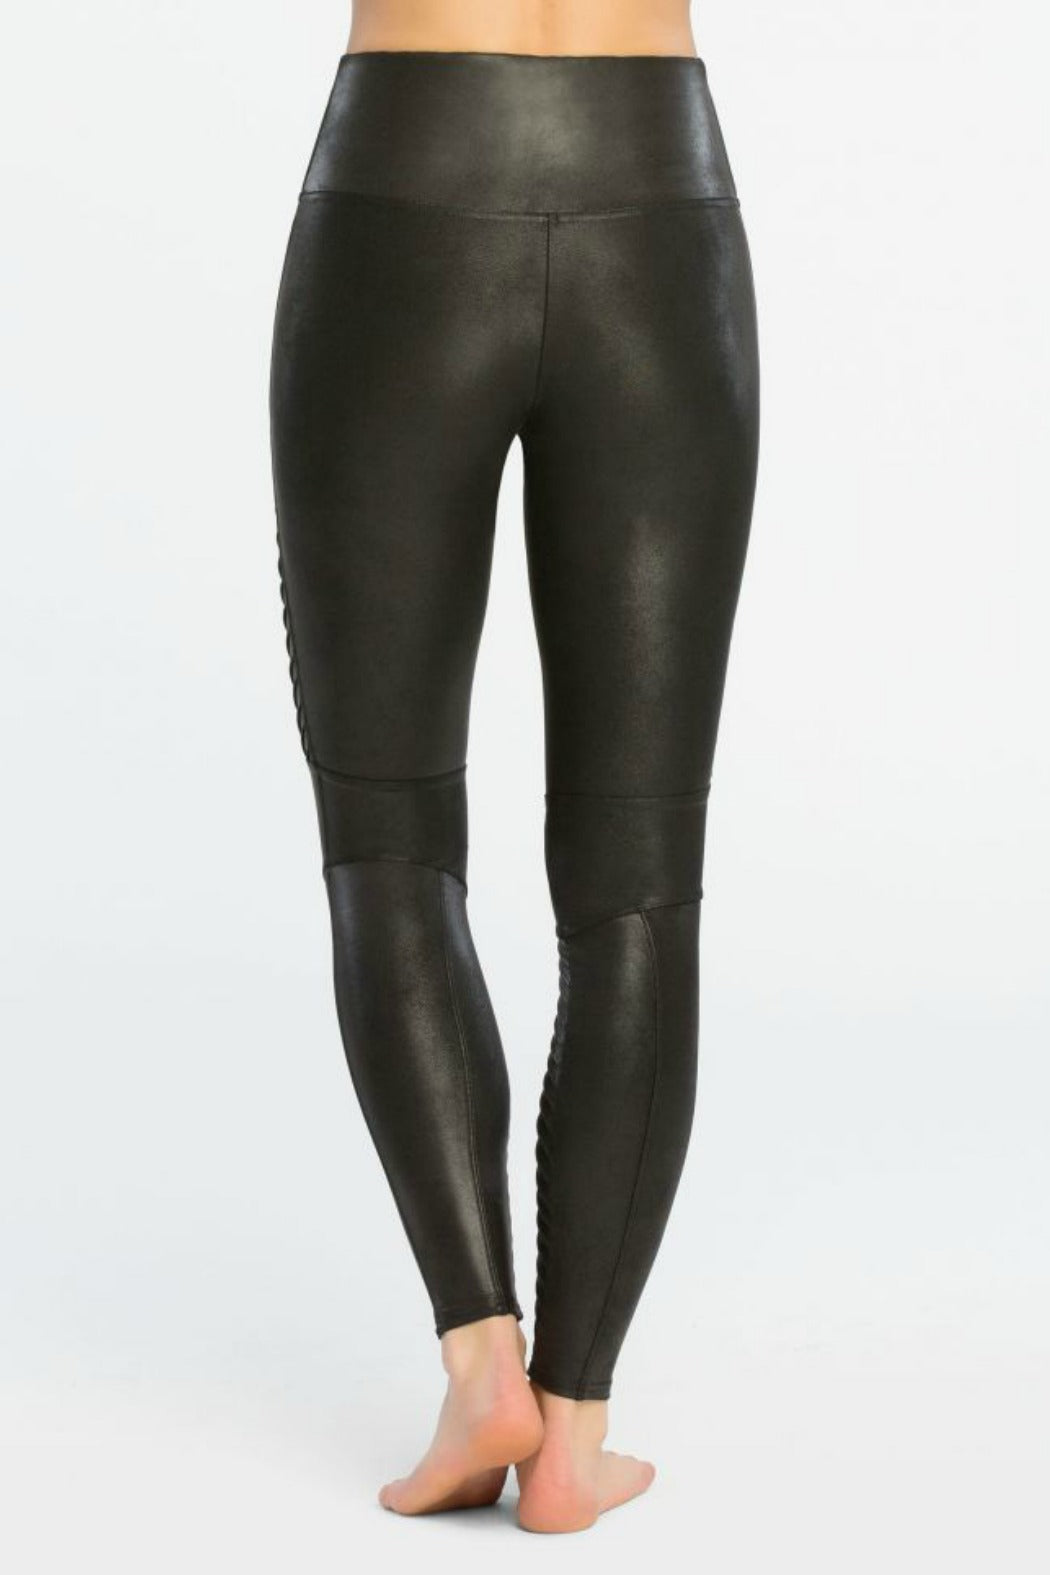 Spanx Faux Leather Legging, Black – Lulubelles Boutique